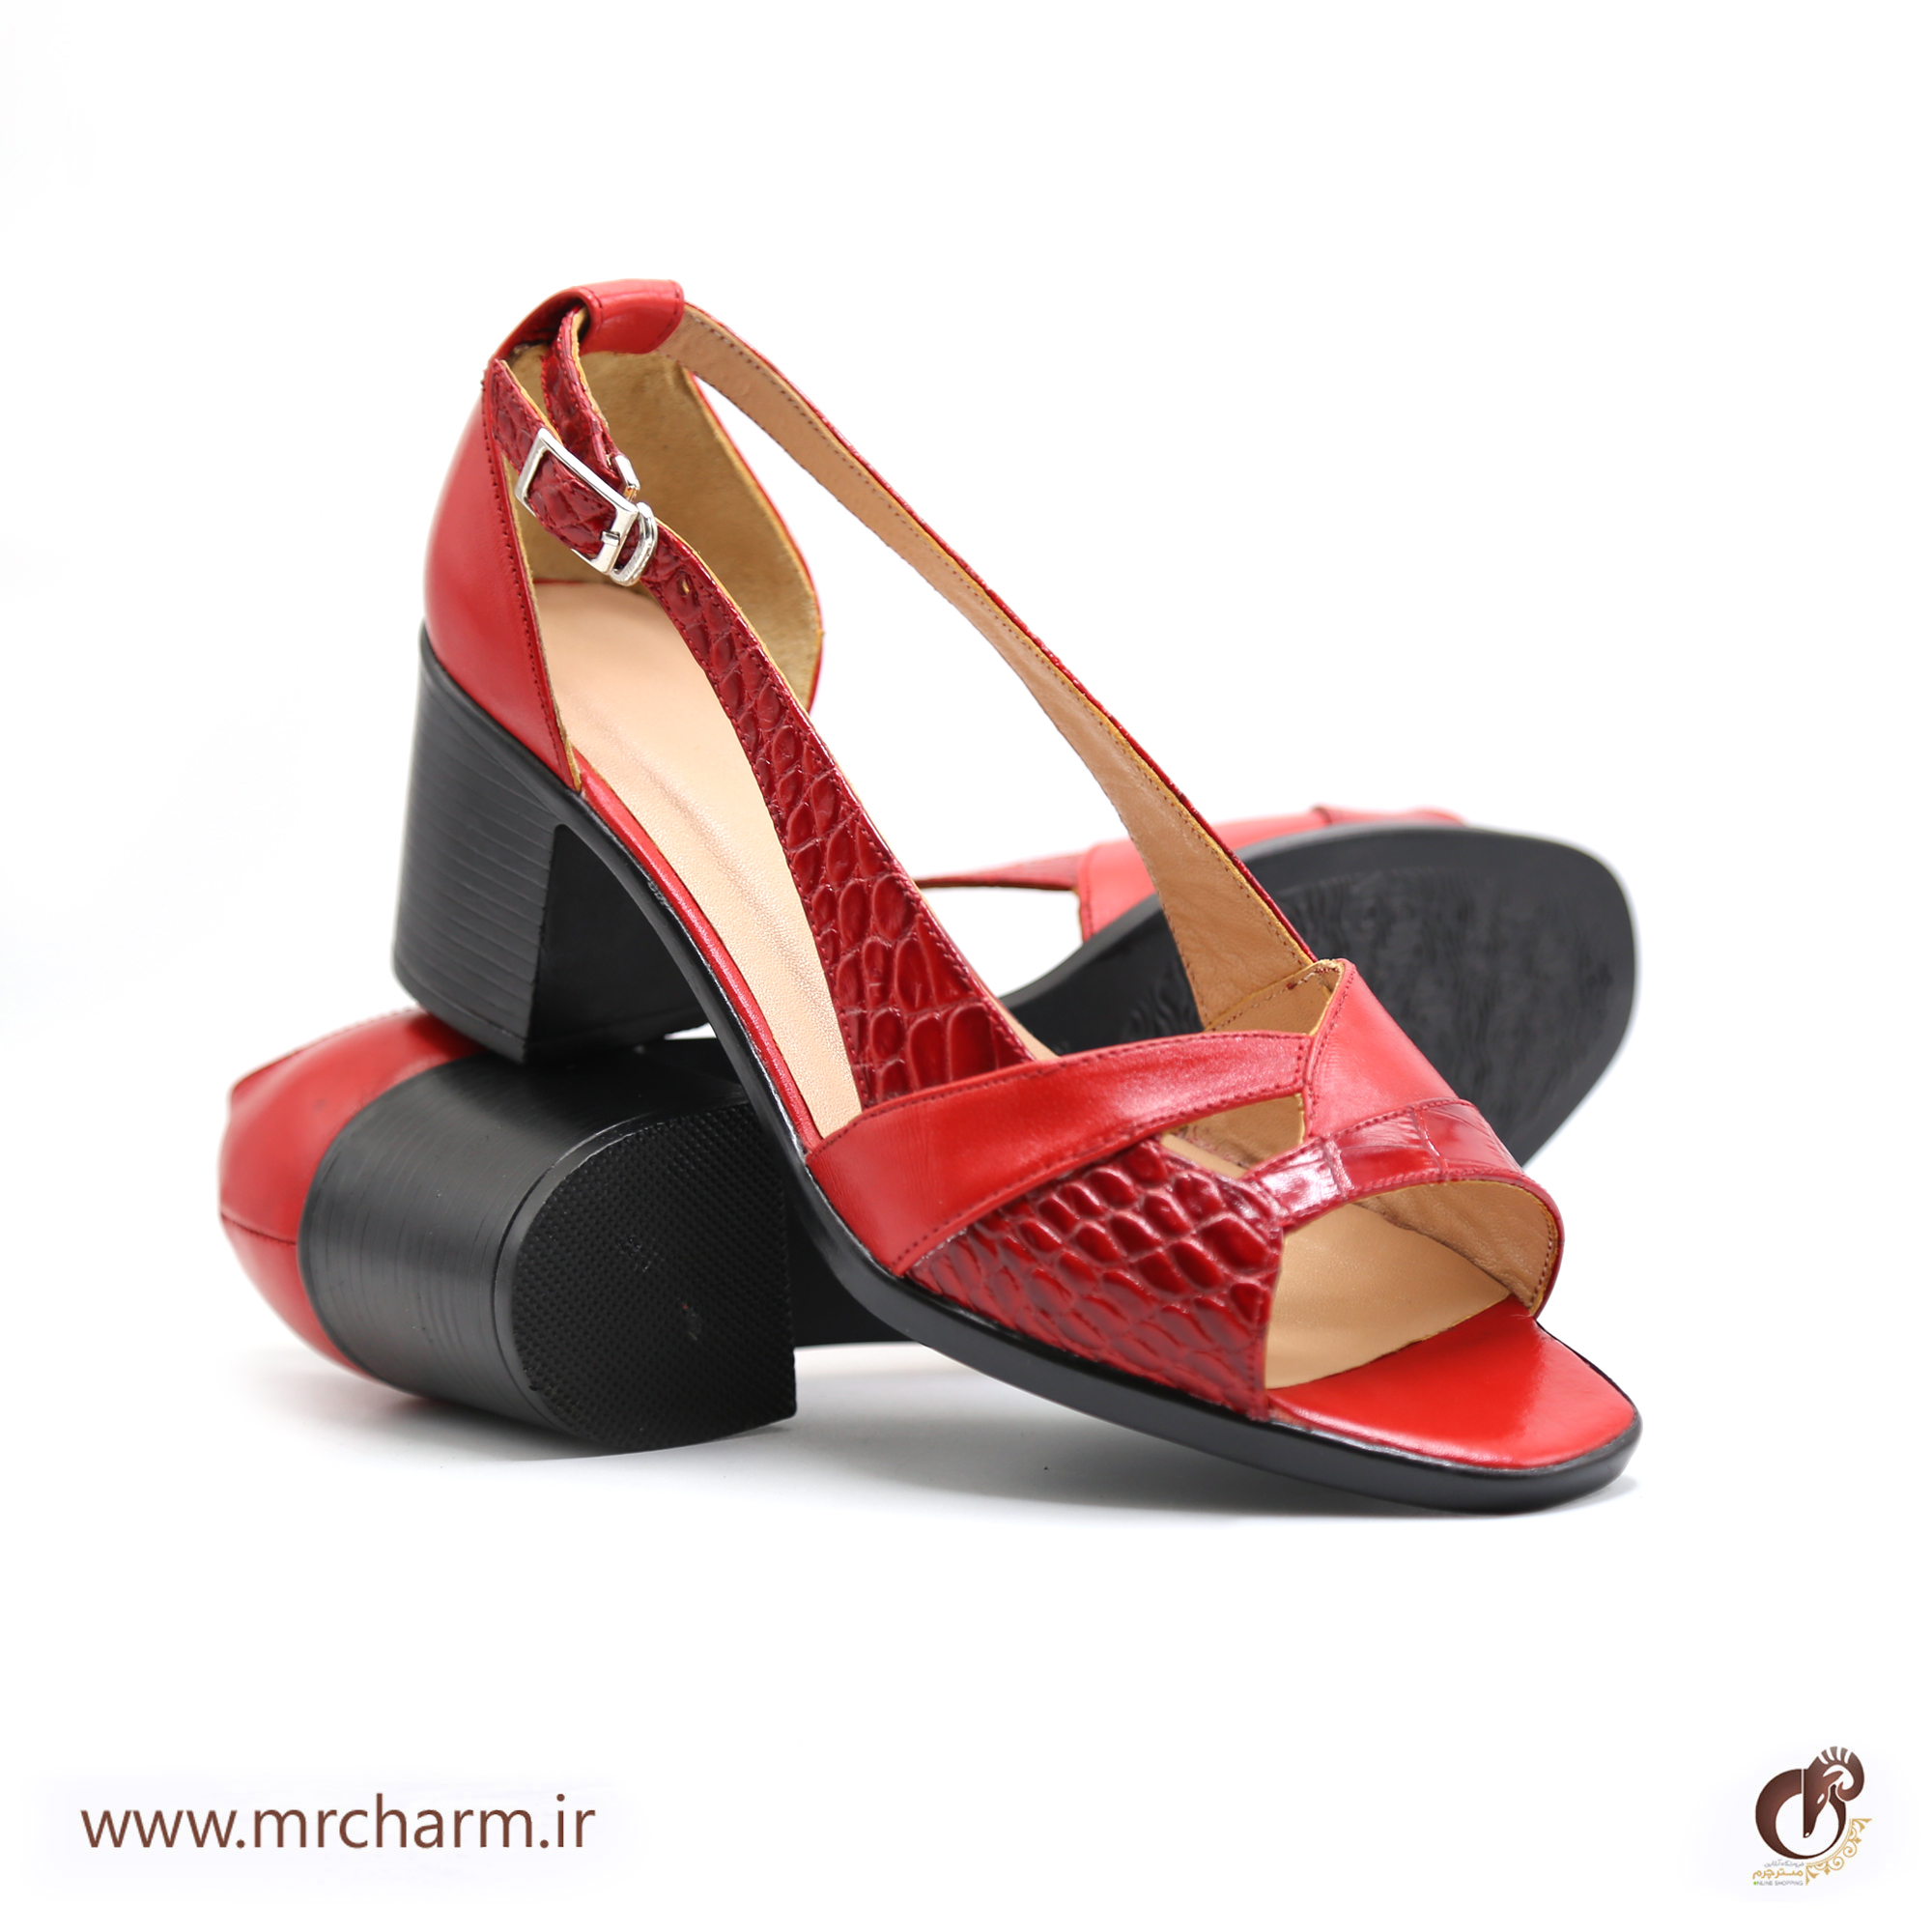 کفش تابستانی زنانه mrc2111-01